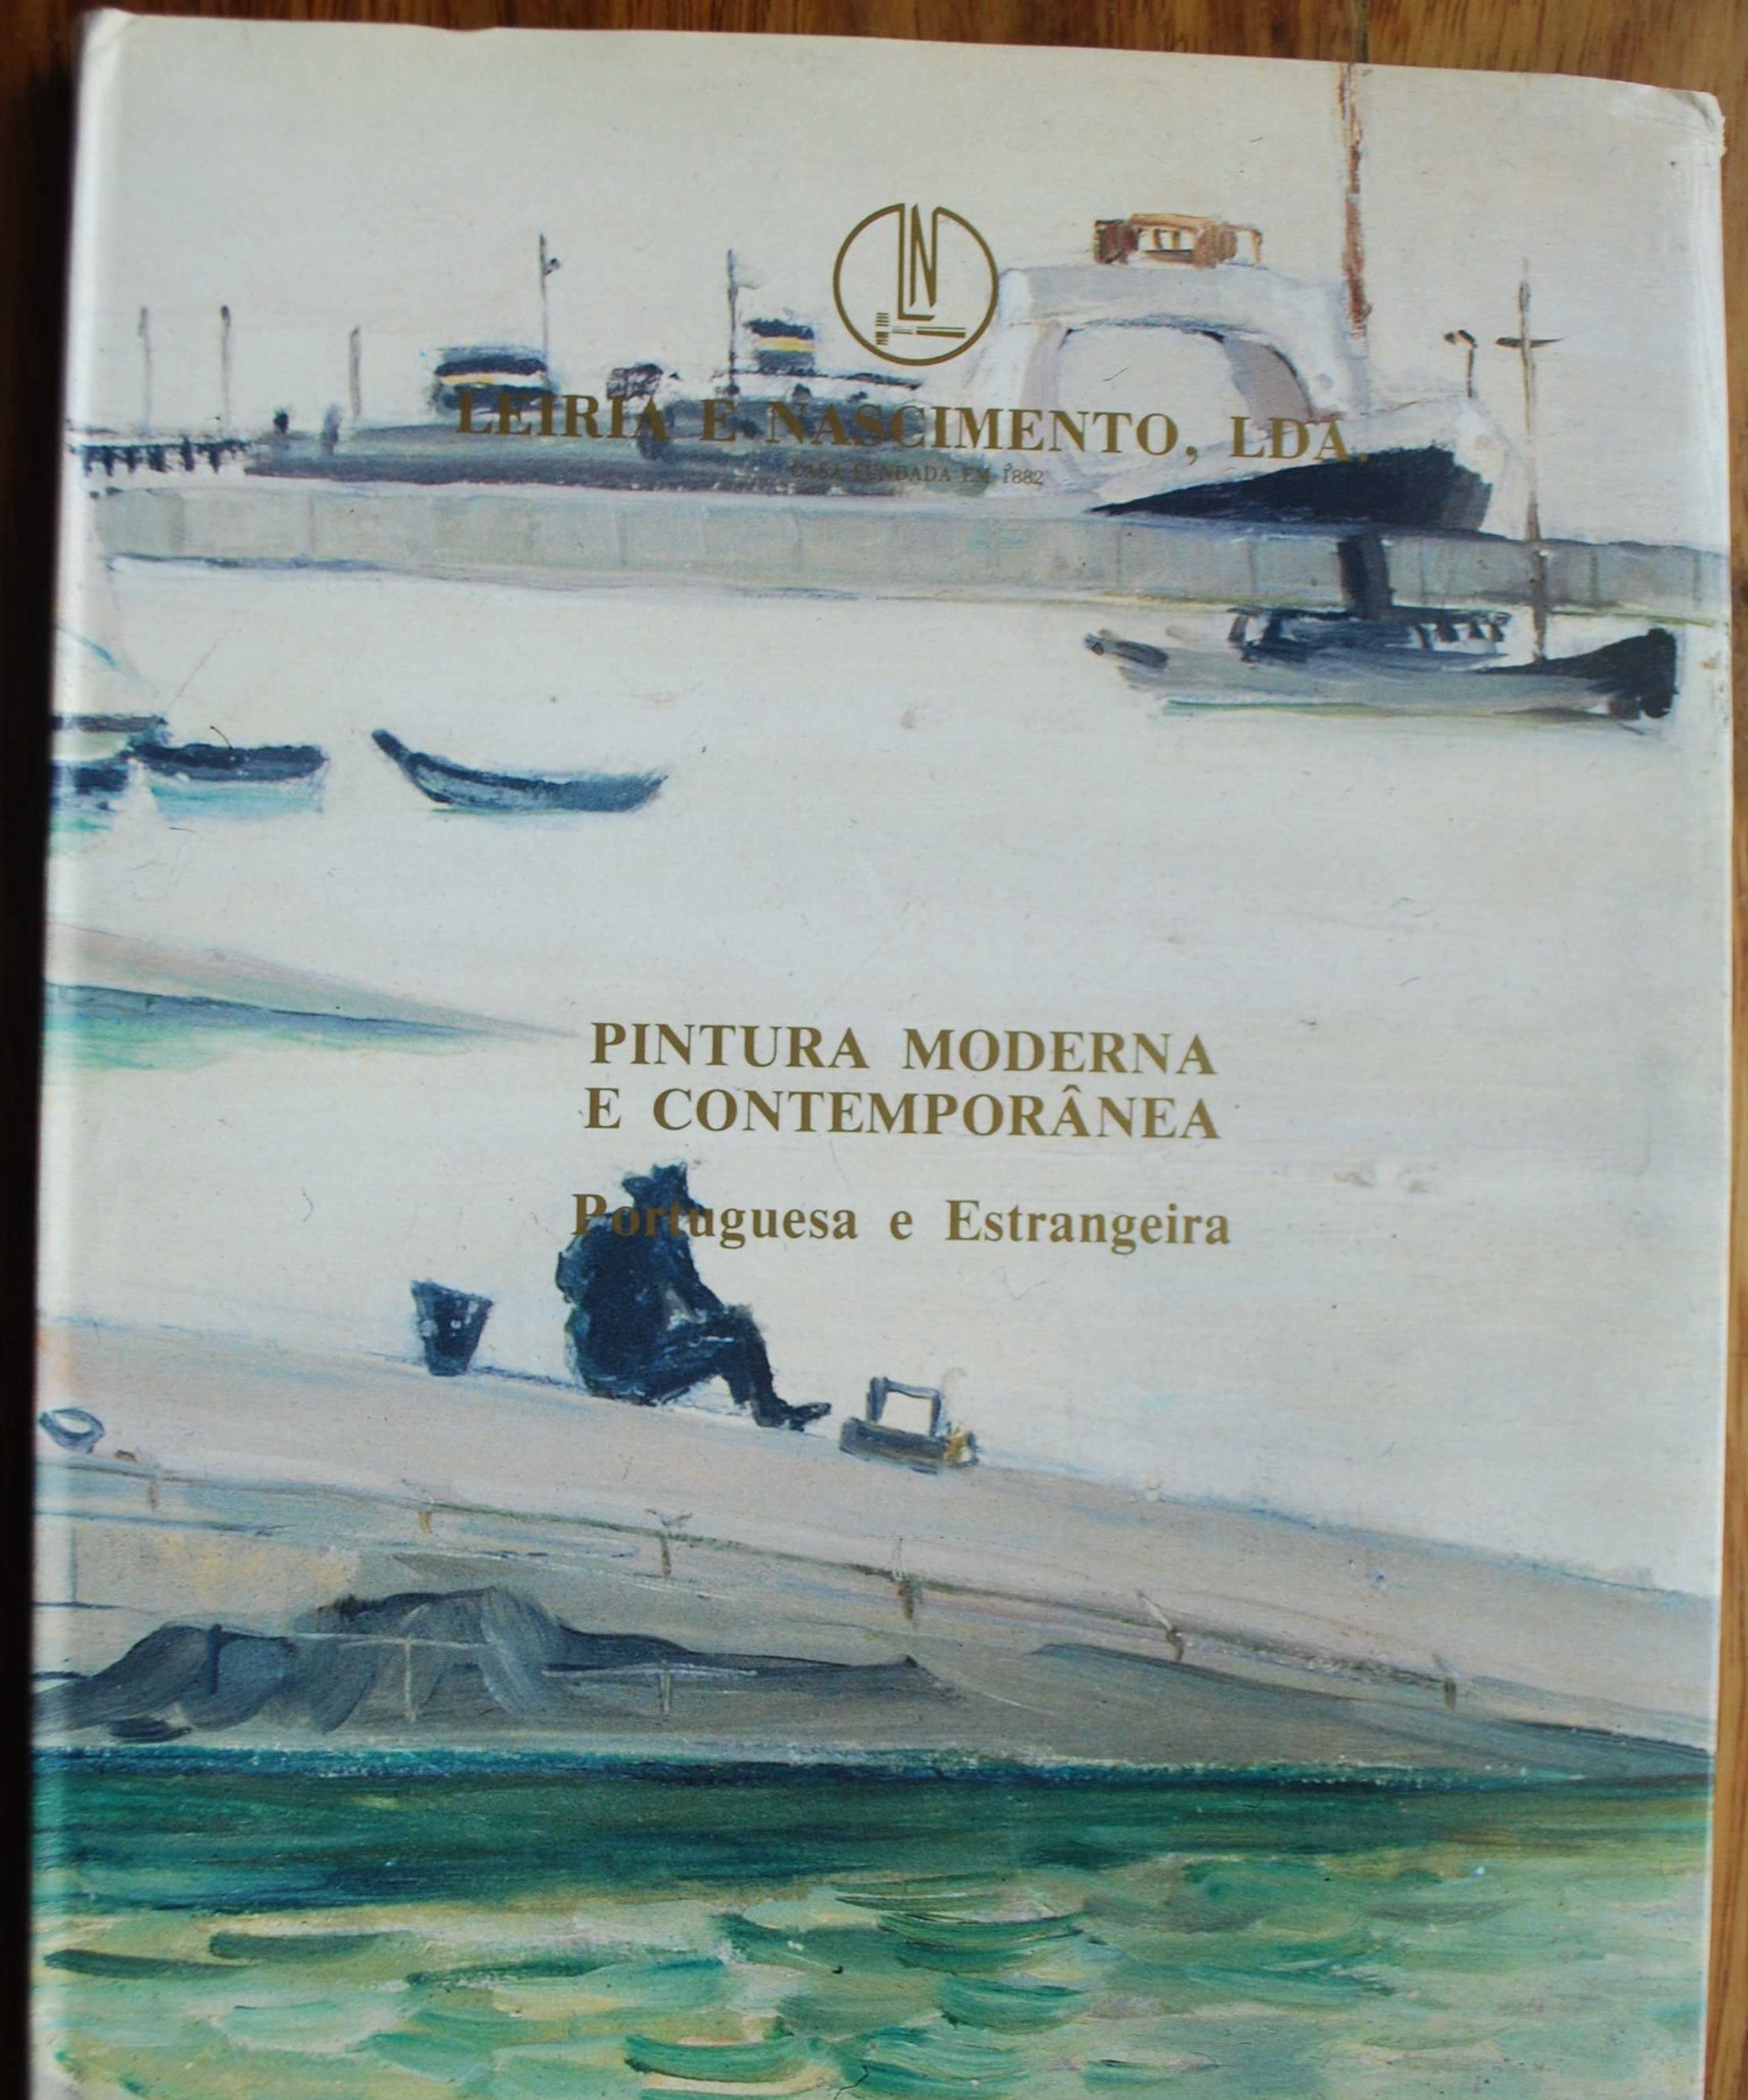 Pintura Moderna e Contemporânea Portuguesa e Estrangeira